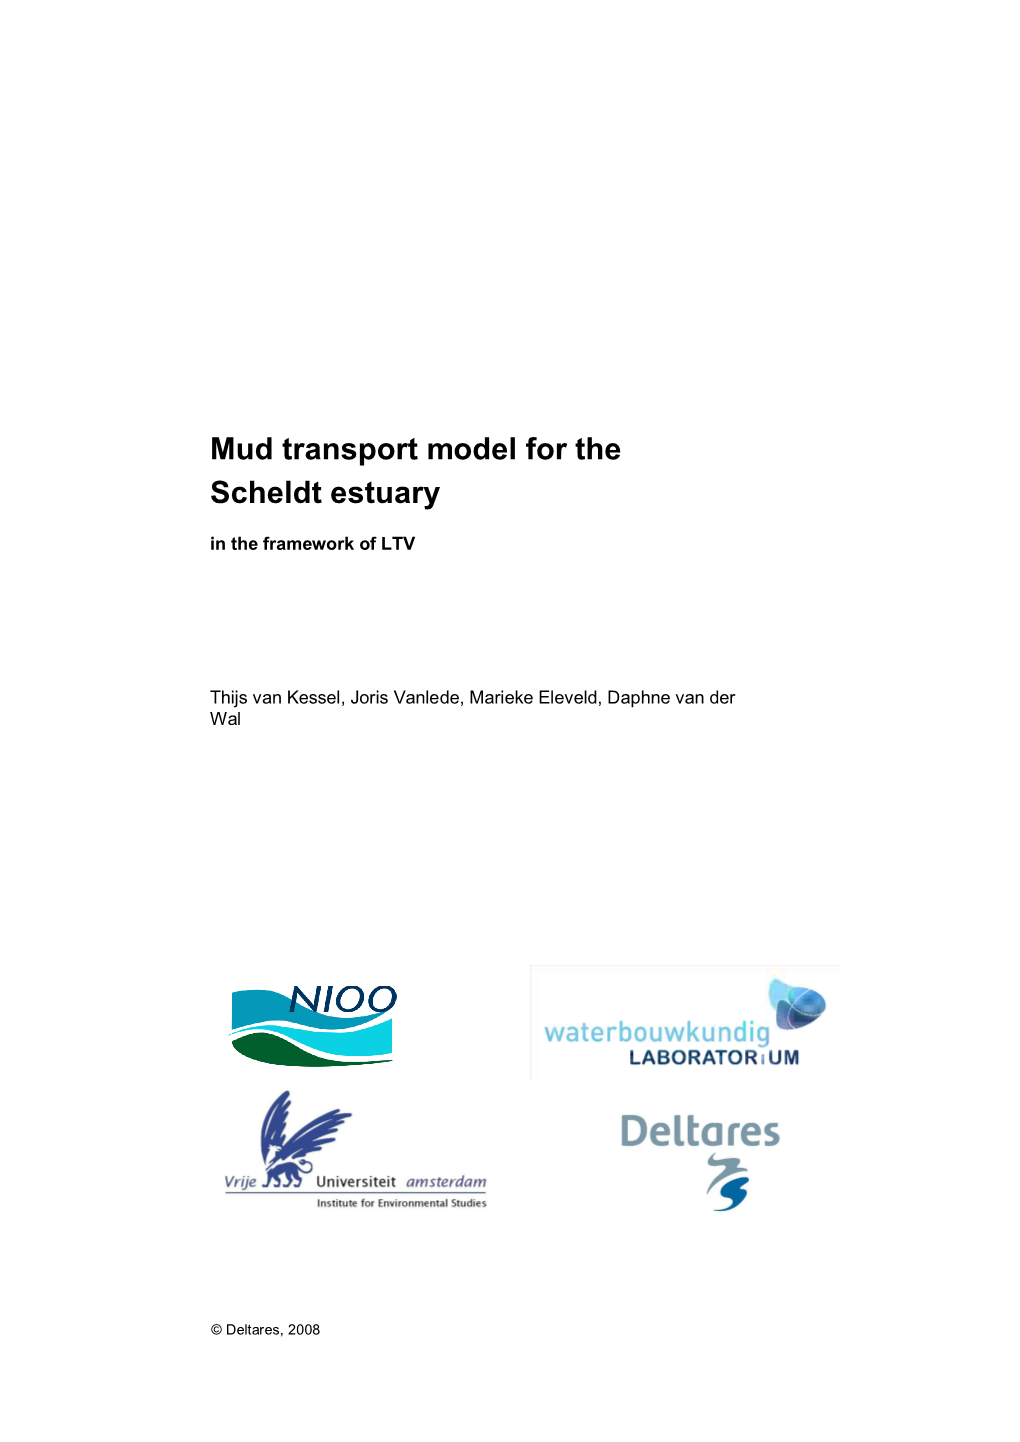 Mud Transport Model for the Scheldt Estuary in the Framework of LTV